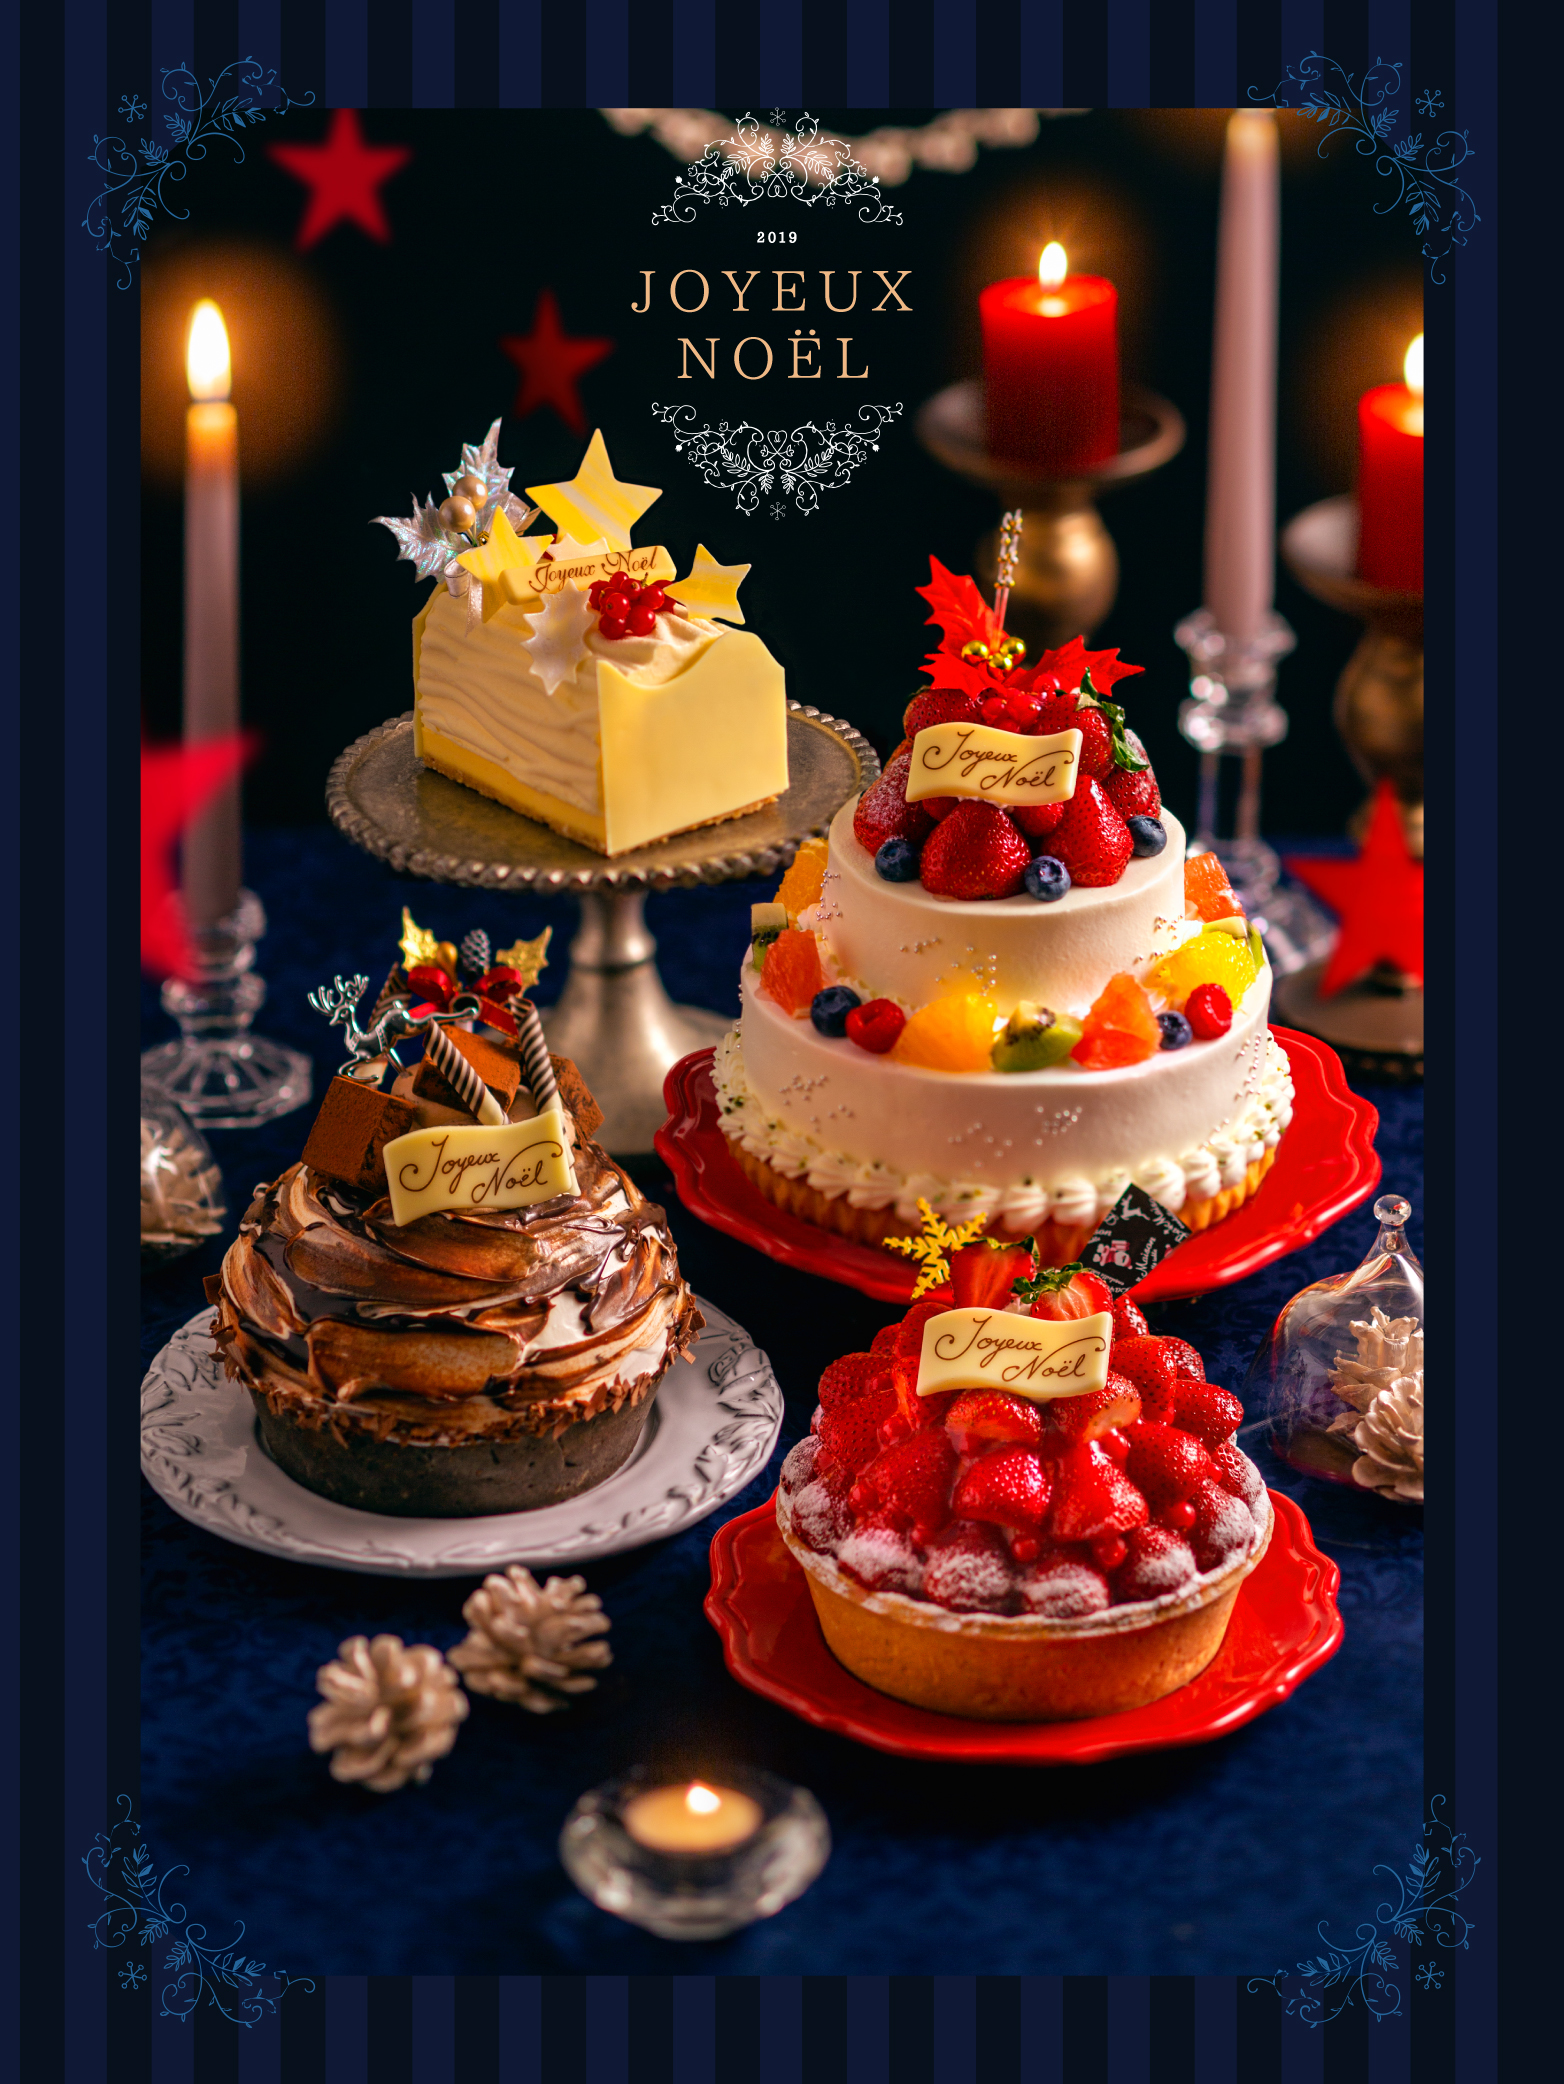 ラ メゾン アンソレイユターブル 19年クリスマスケーキ予約を開始しました 株式会社ピー エス コープのプレスリリース